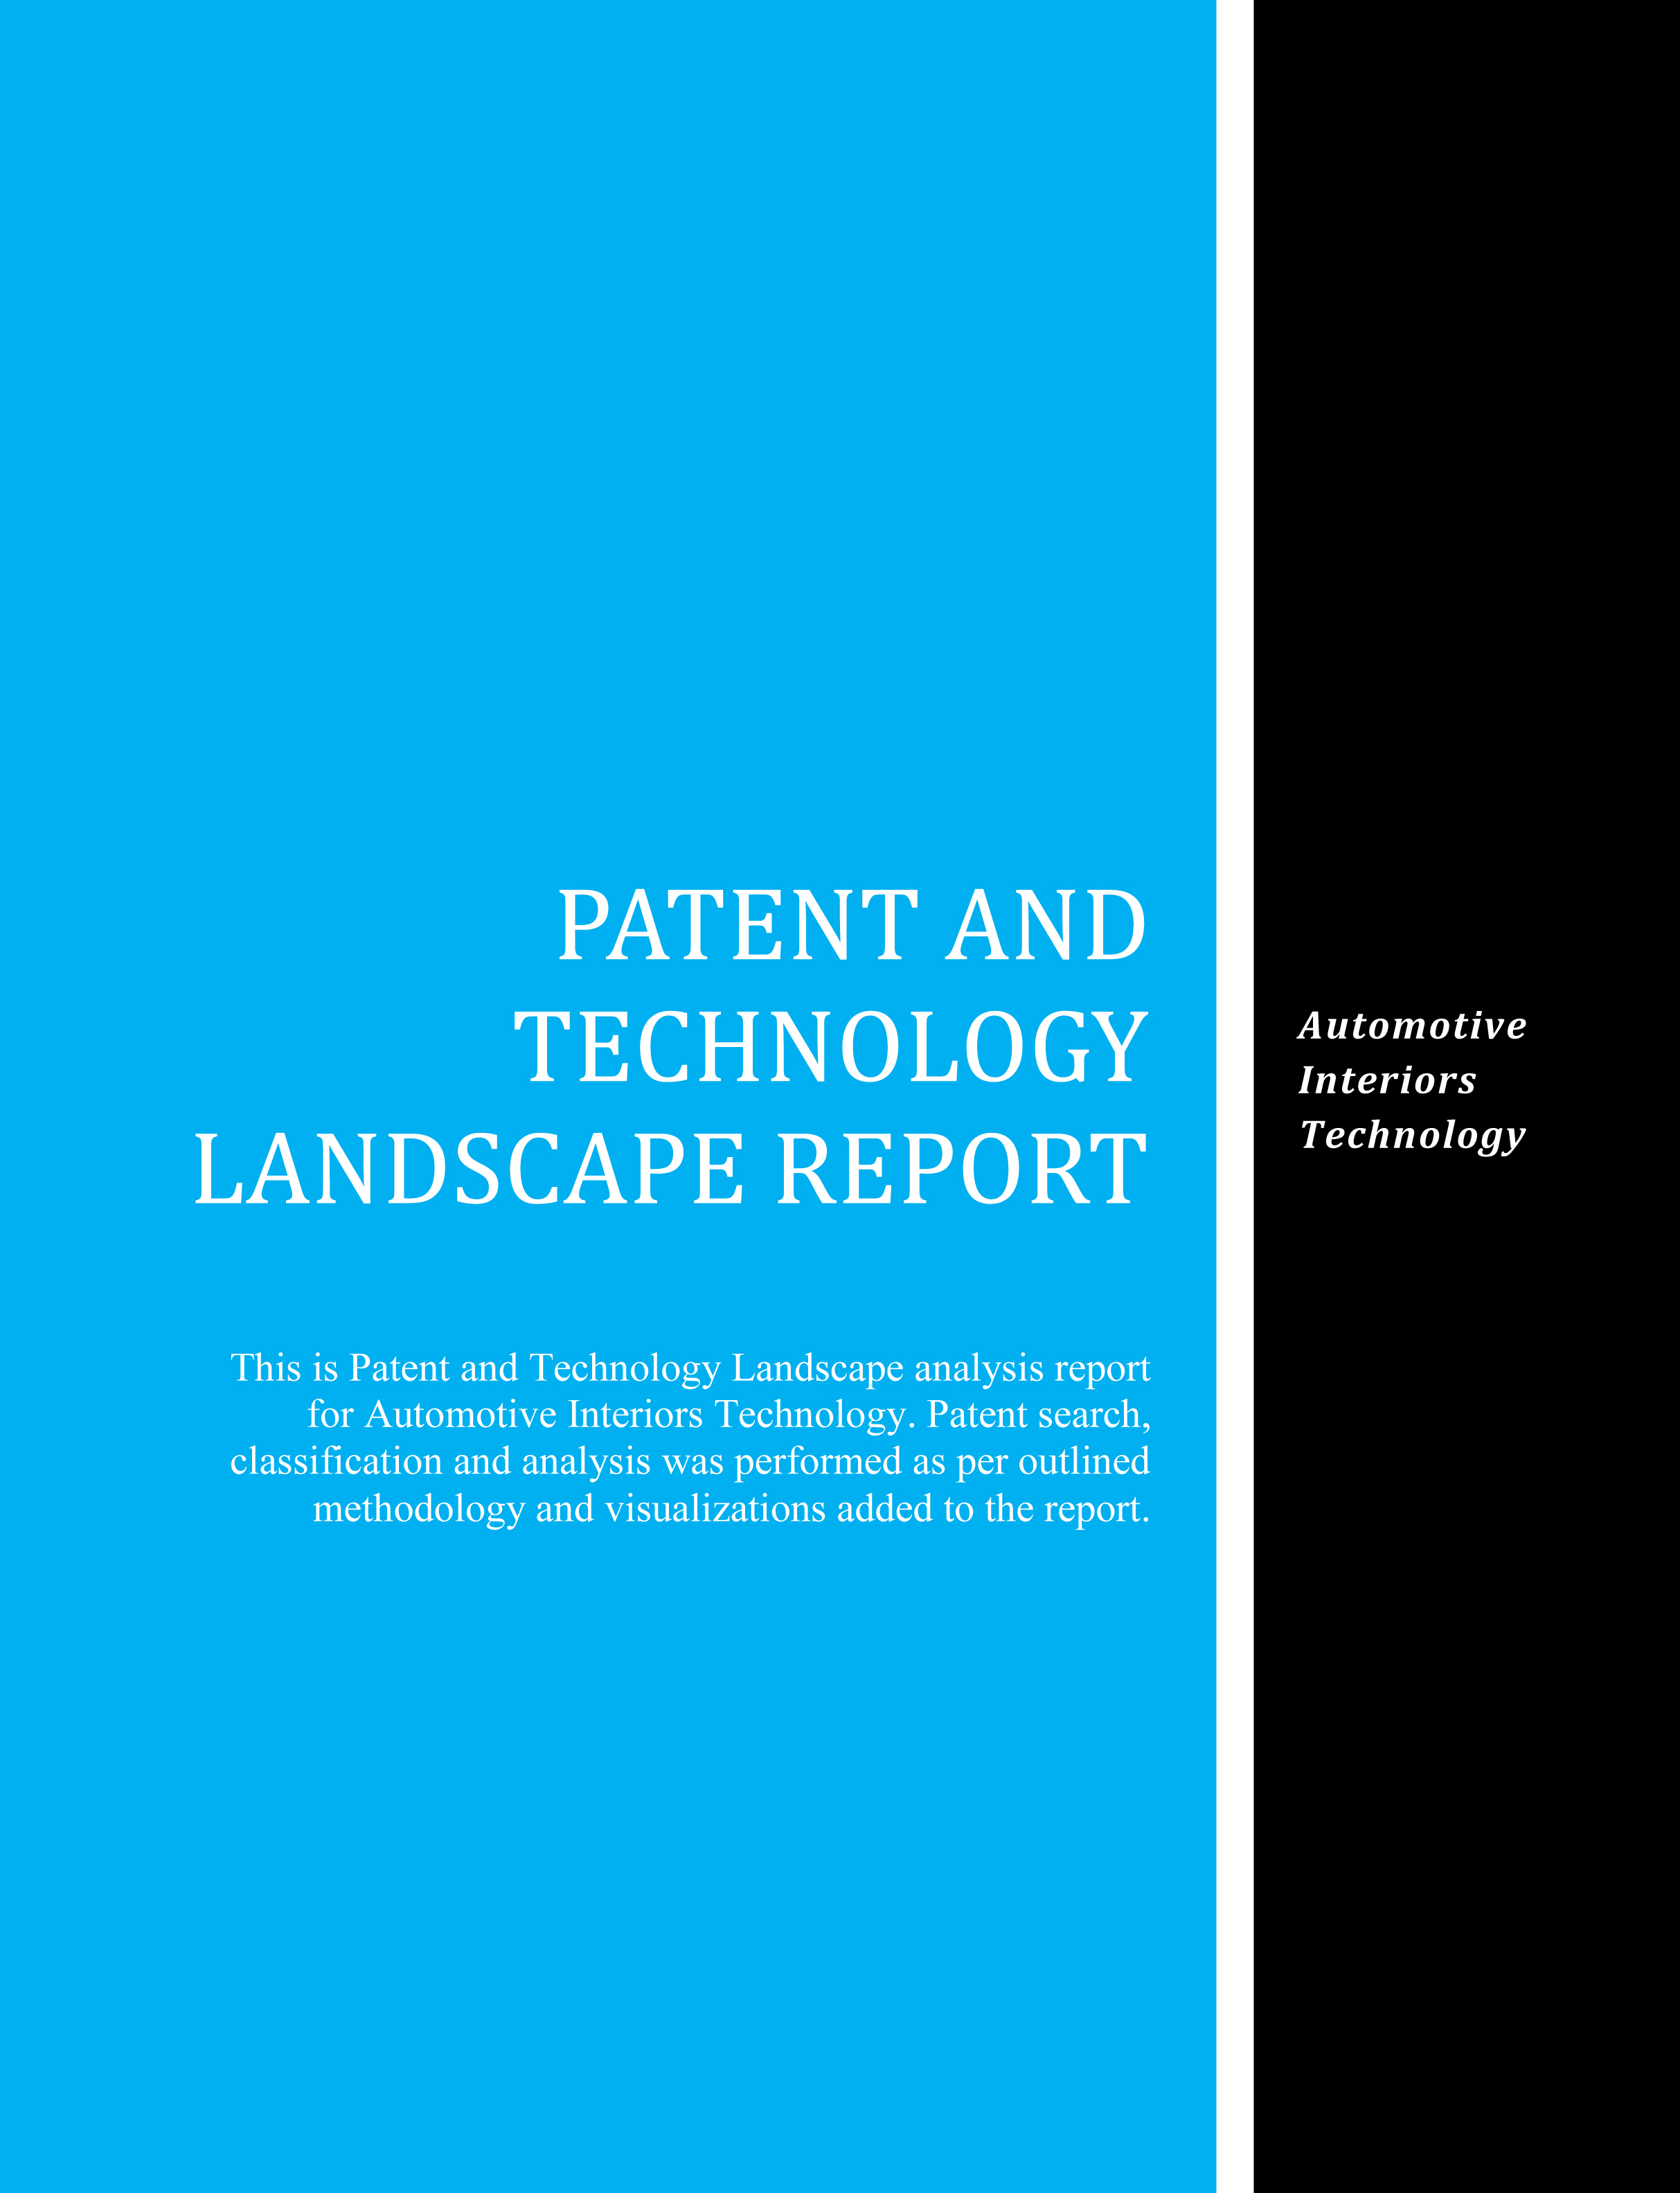 Automotive Interiors Technology Patent Landscape Report